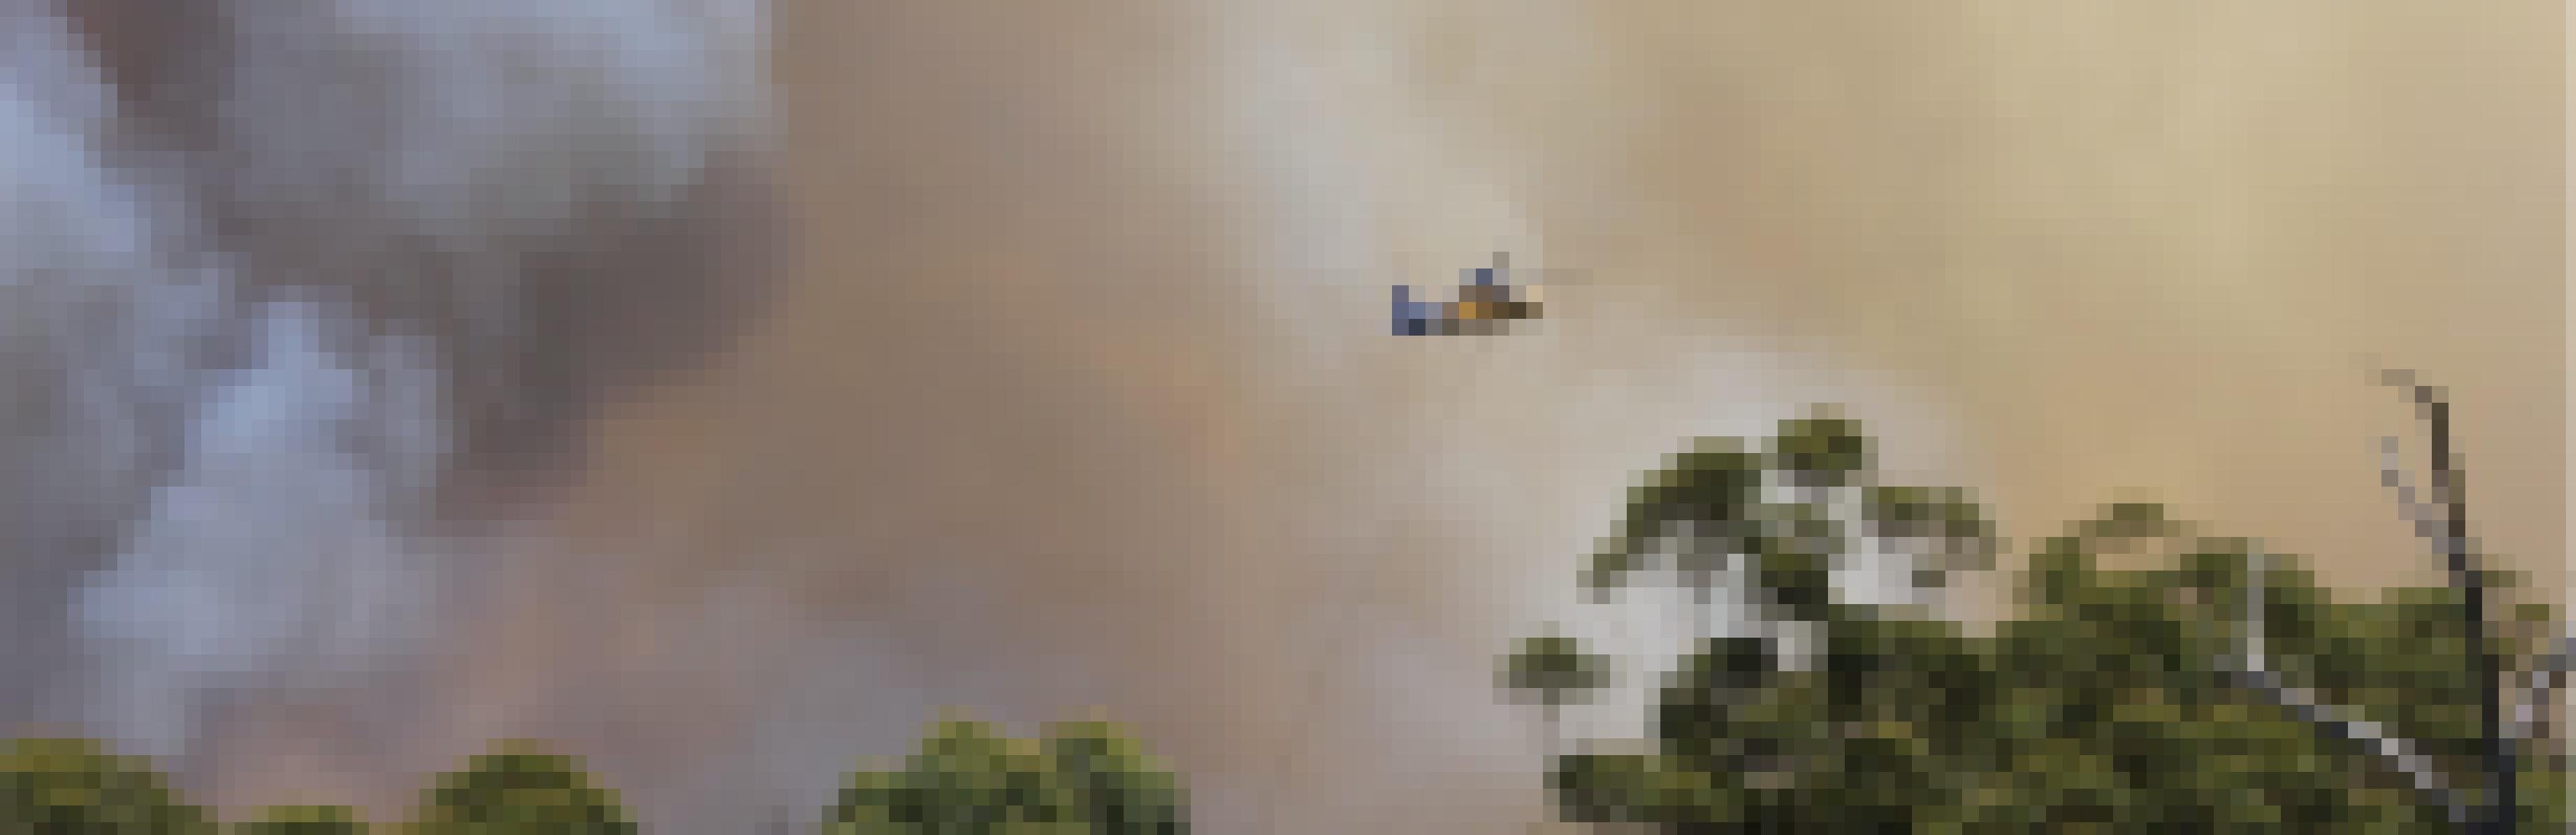 Ein Läschflugzeug fliegt durch eine dichte Rauchwolke